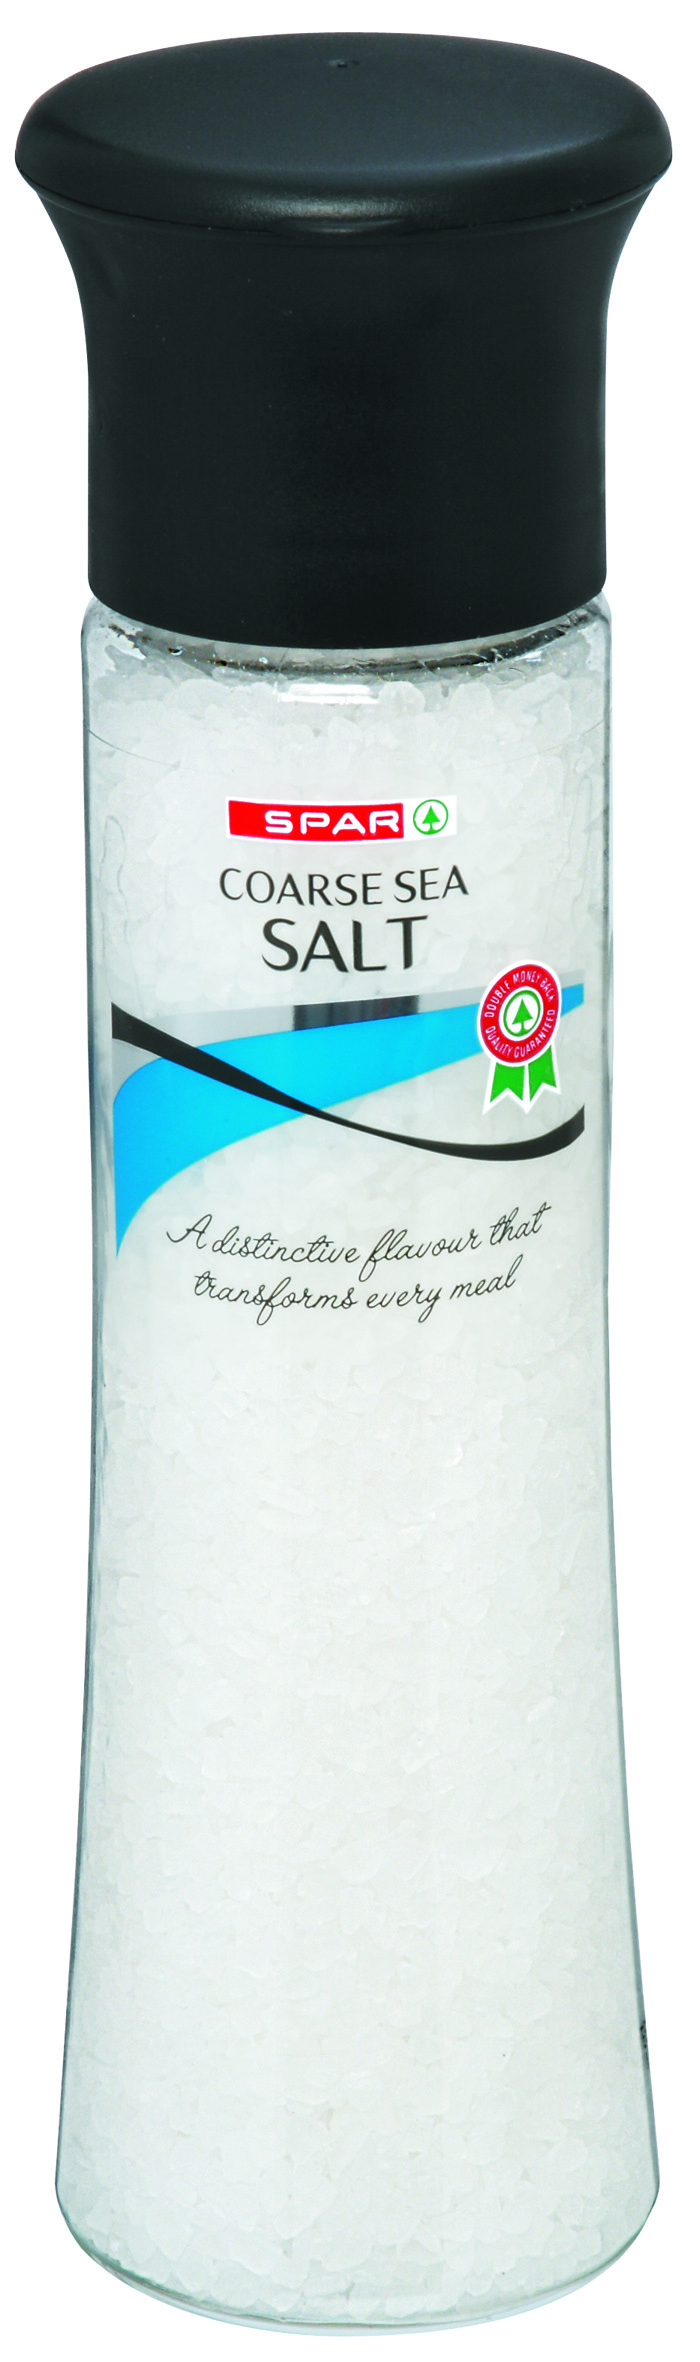 coarse sea salt